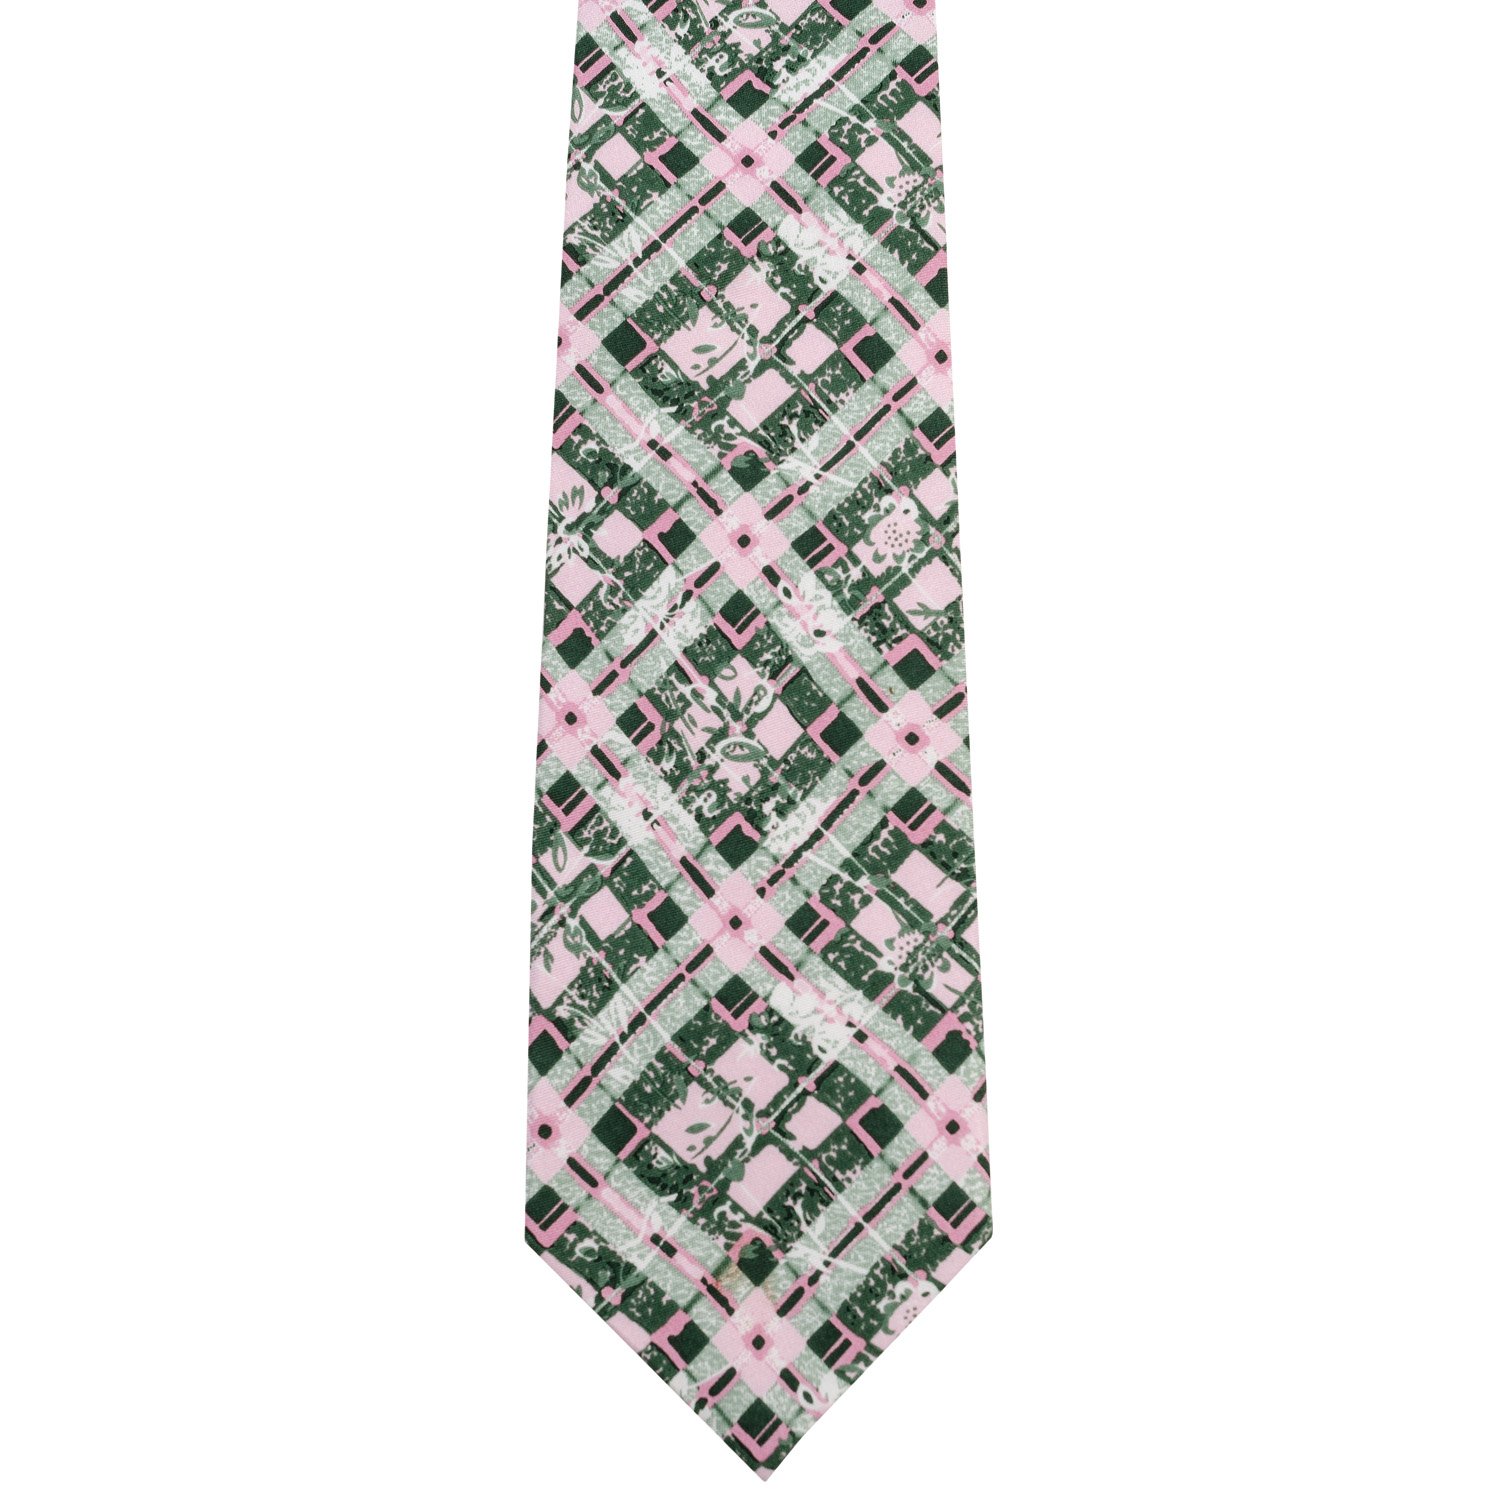 Krawatte-A_02_1500x1500_rgb.jpg